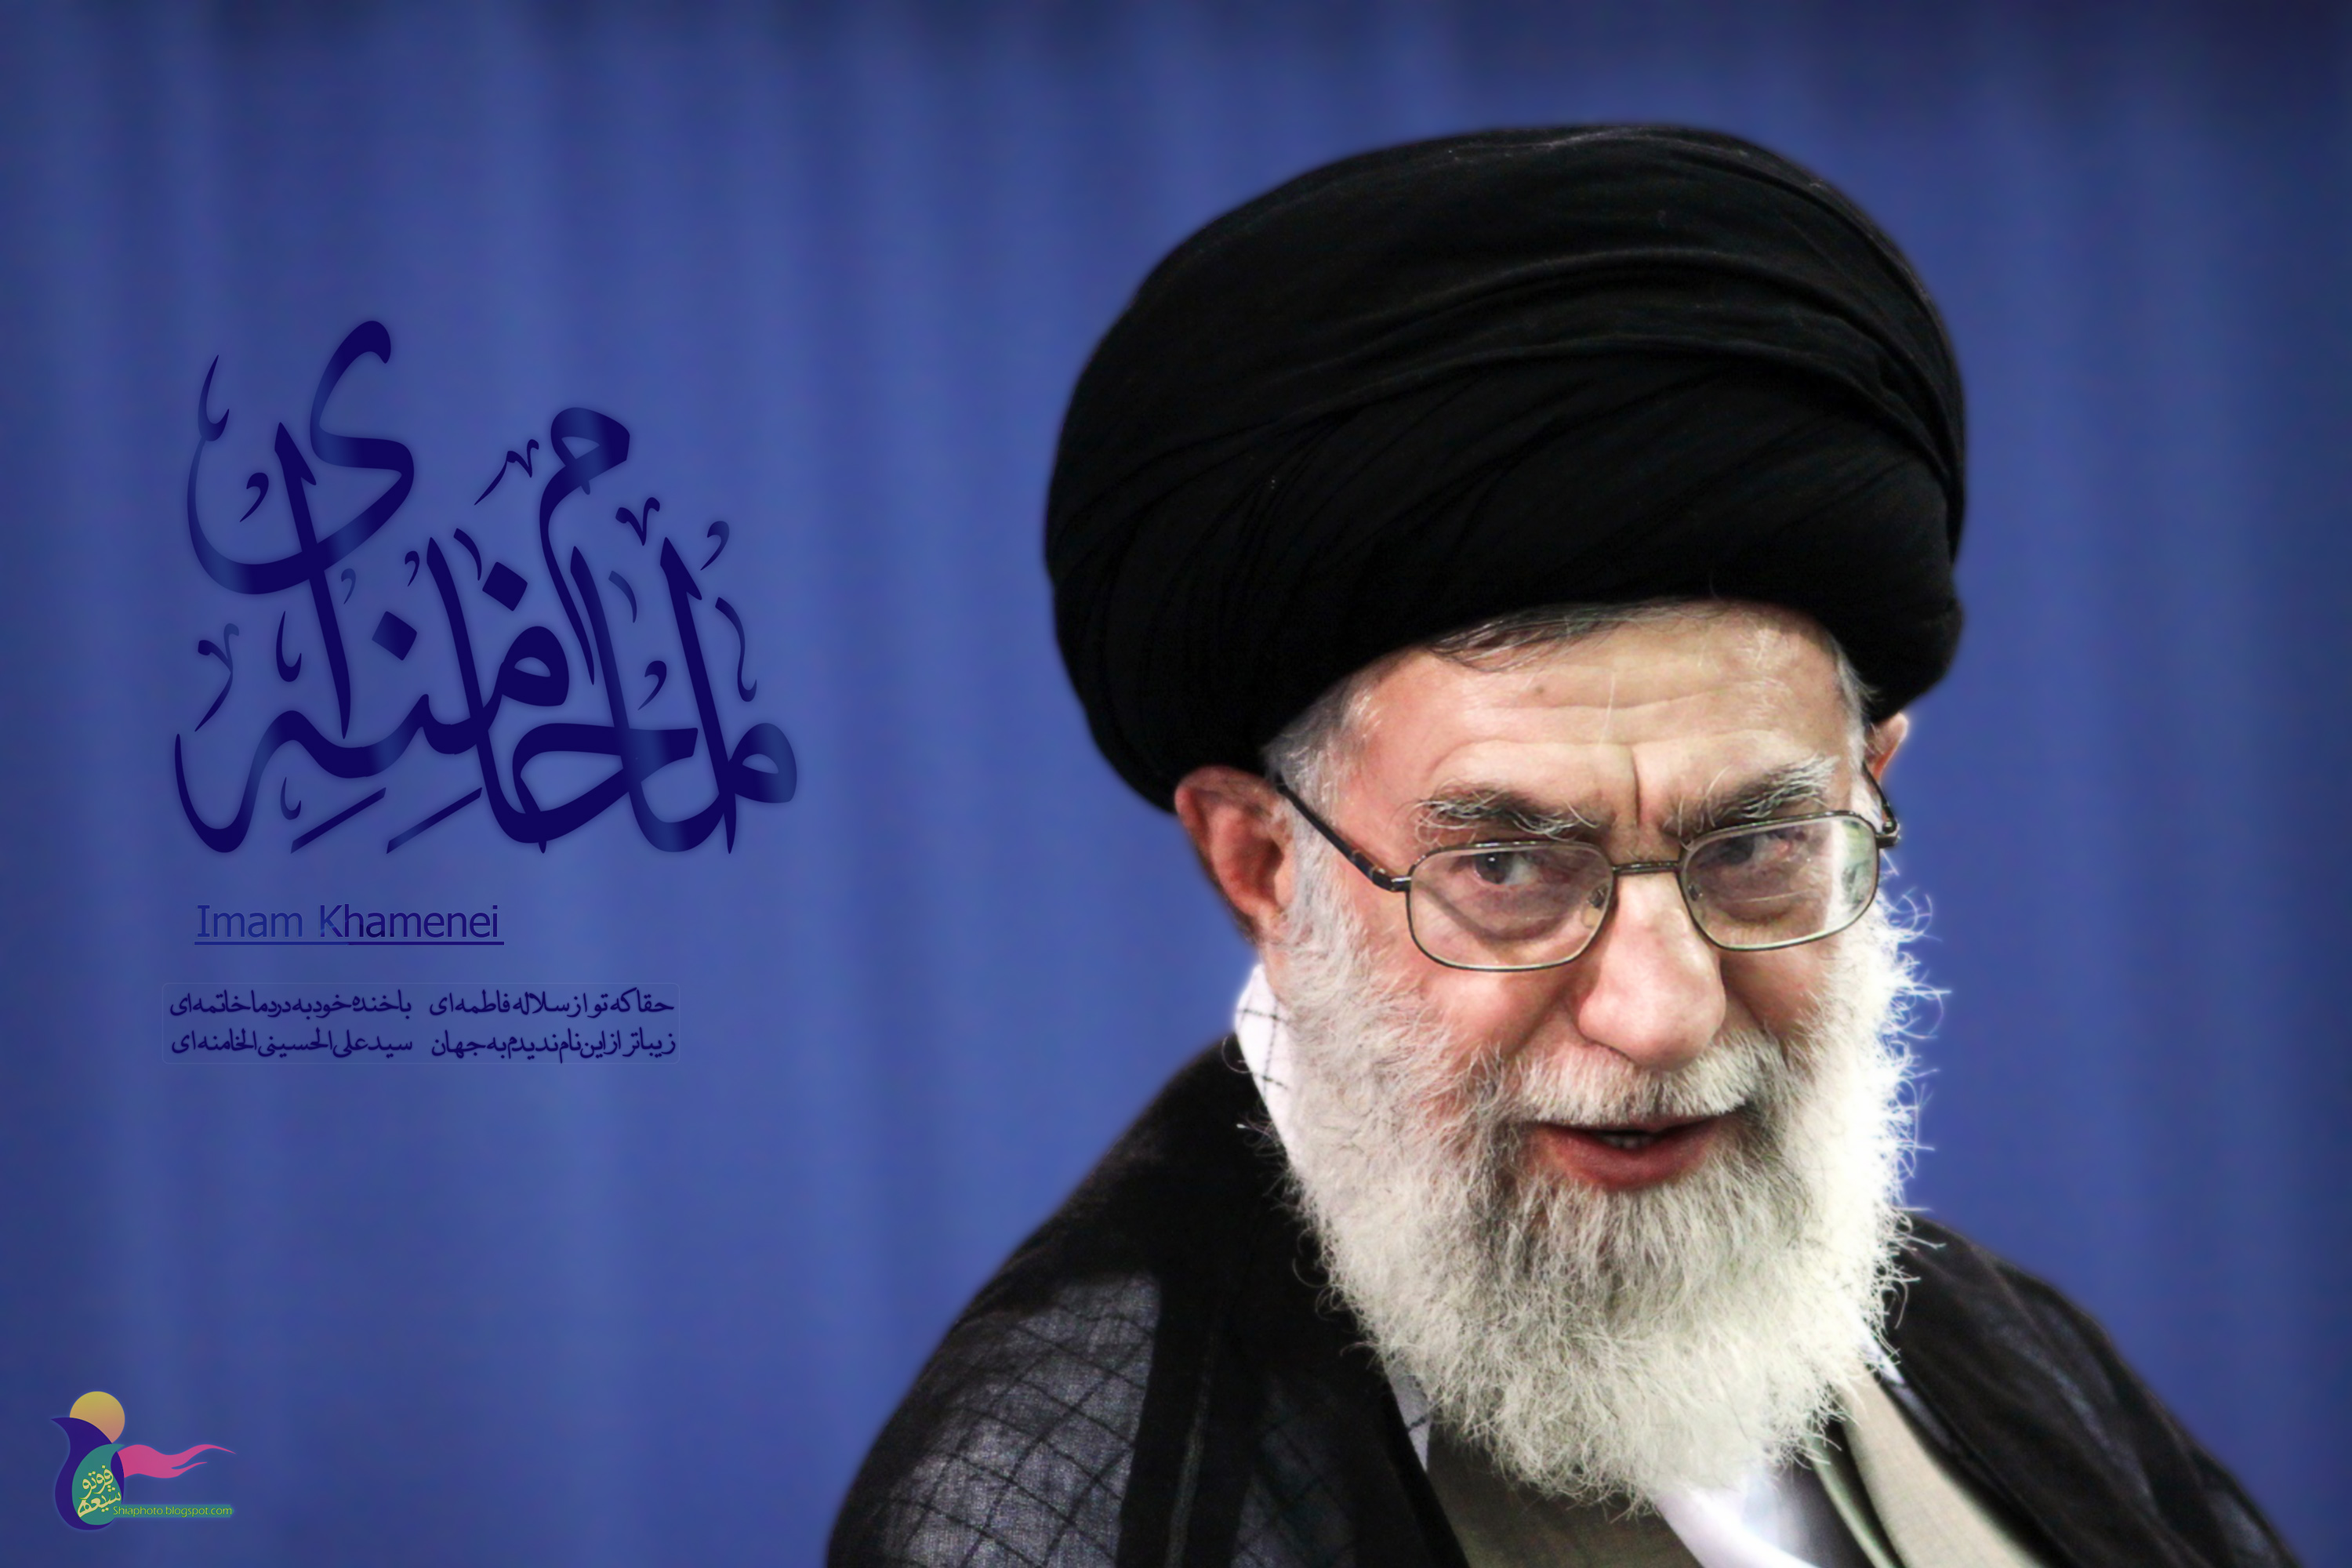 http://shiaphoto.persiangig.com/imags/imam-khamenei-2/imam-khamenei-By-shiaphoto.jpg